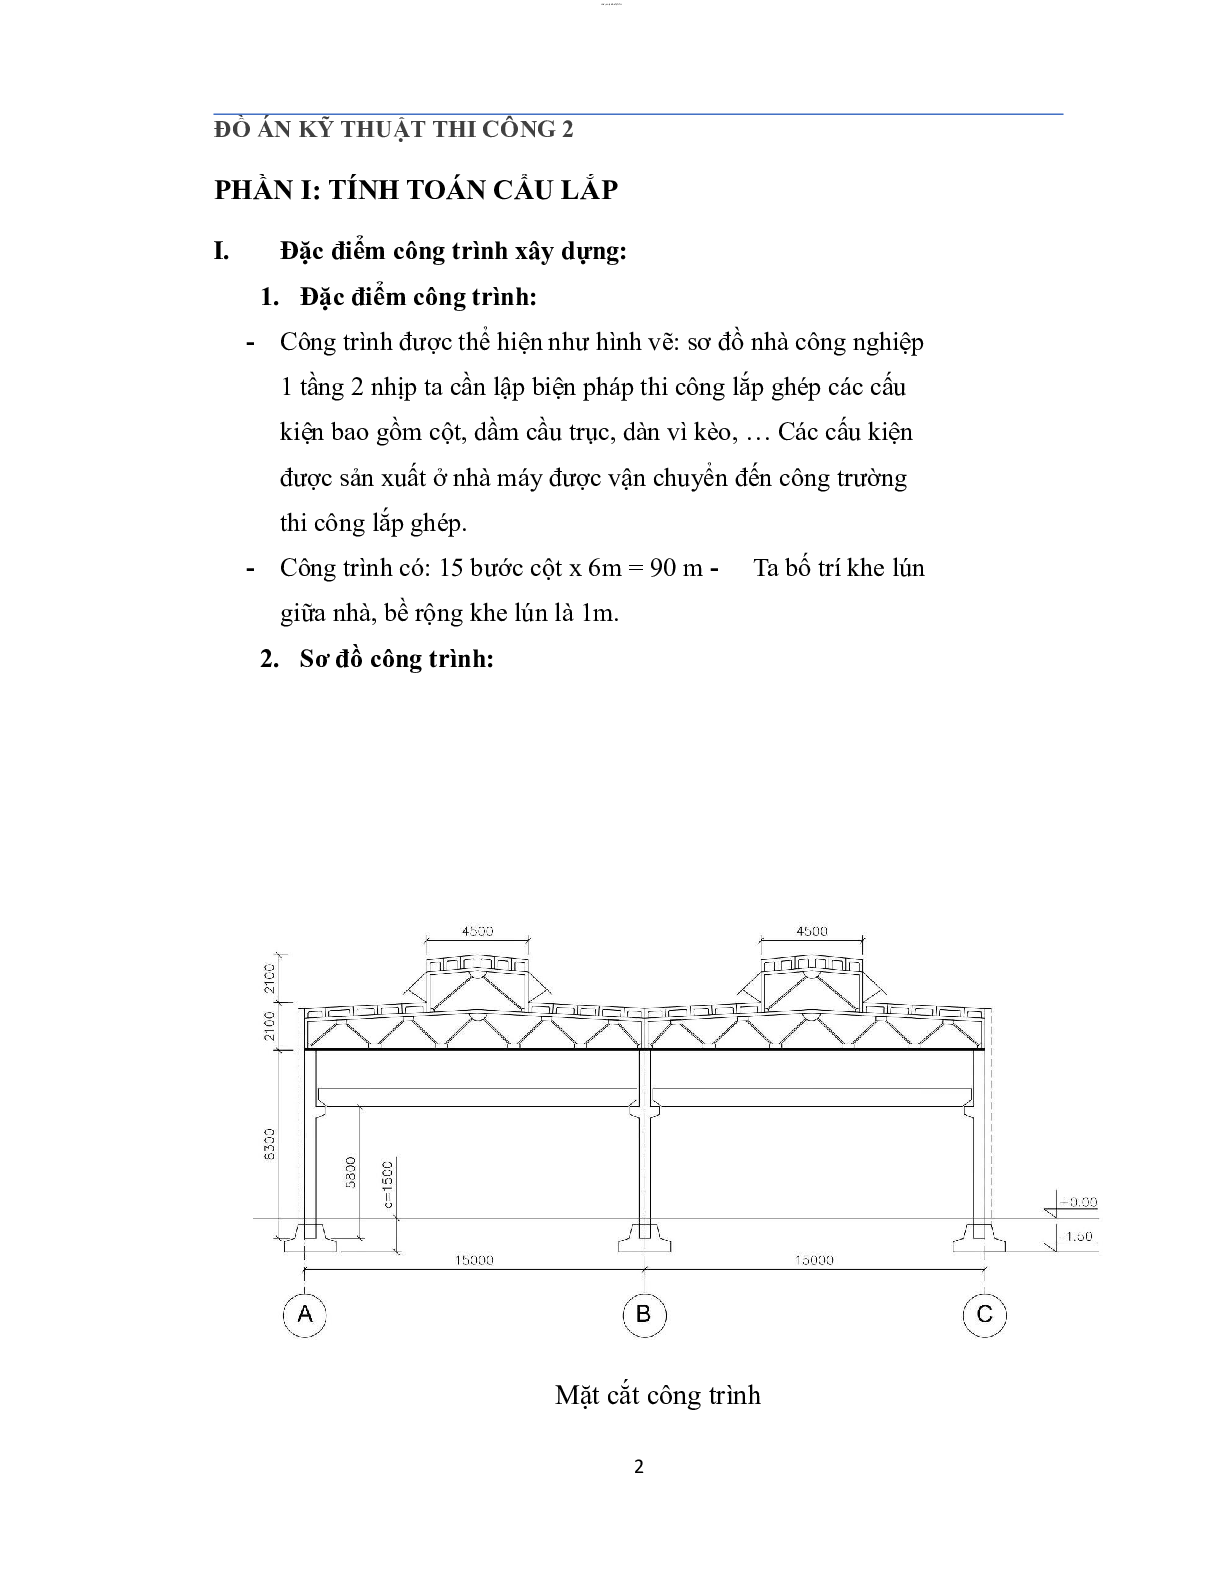 Thi công ghép lắp ghép nhà công nghiệp | Đồ án kỹ thuật thi công 2 | Trường Đại học Xây dựng (trang 2)